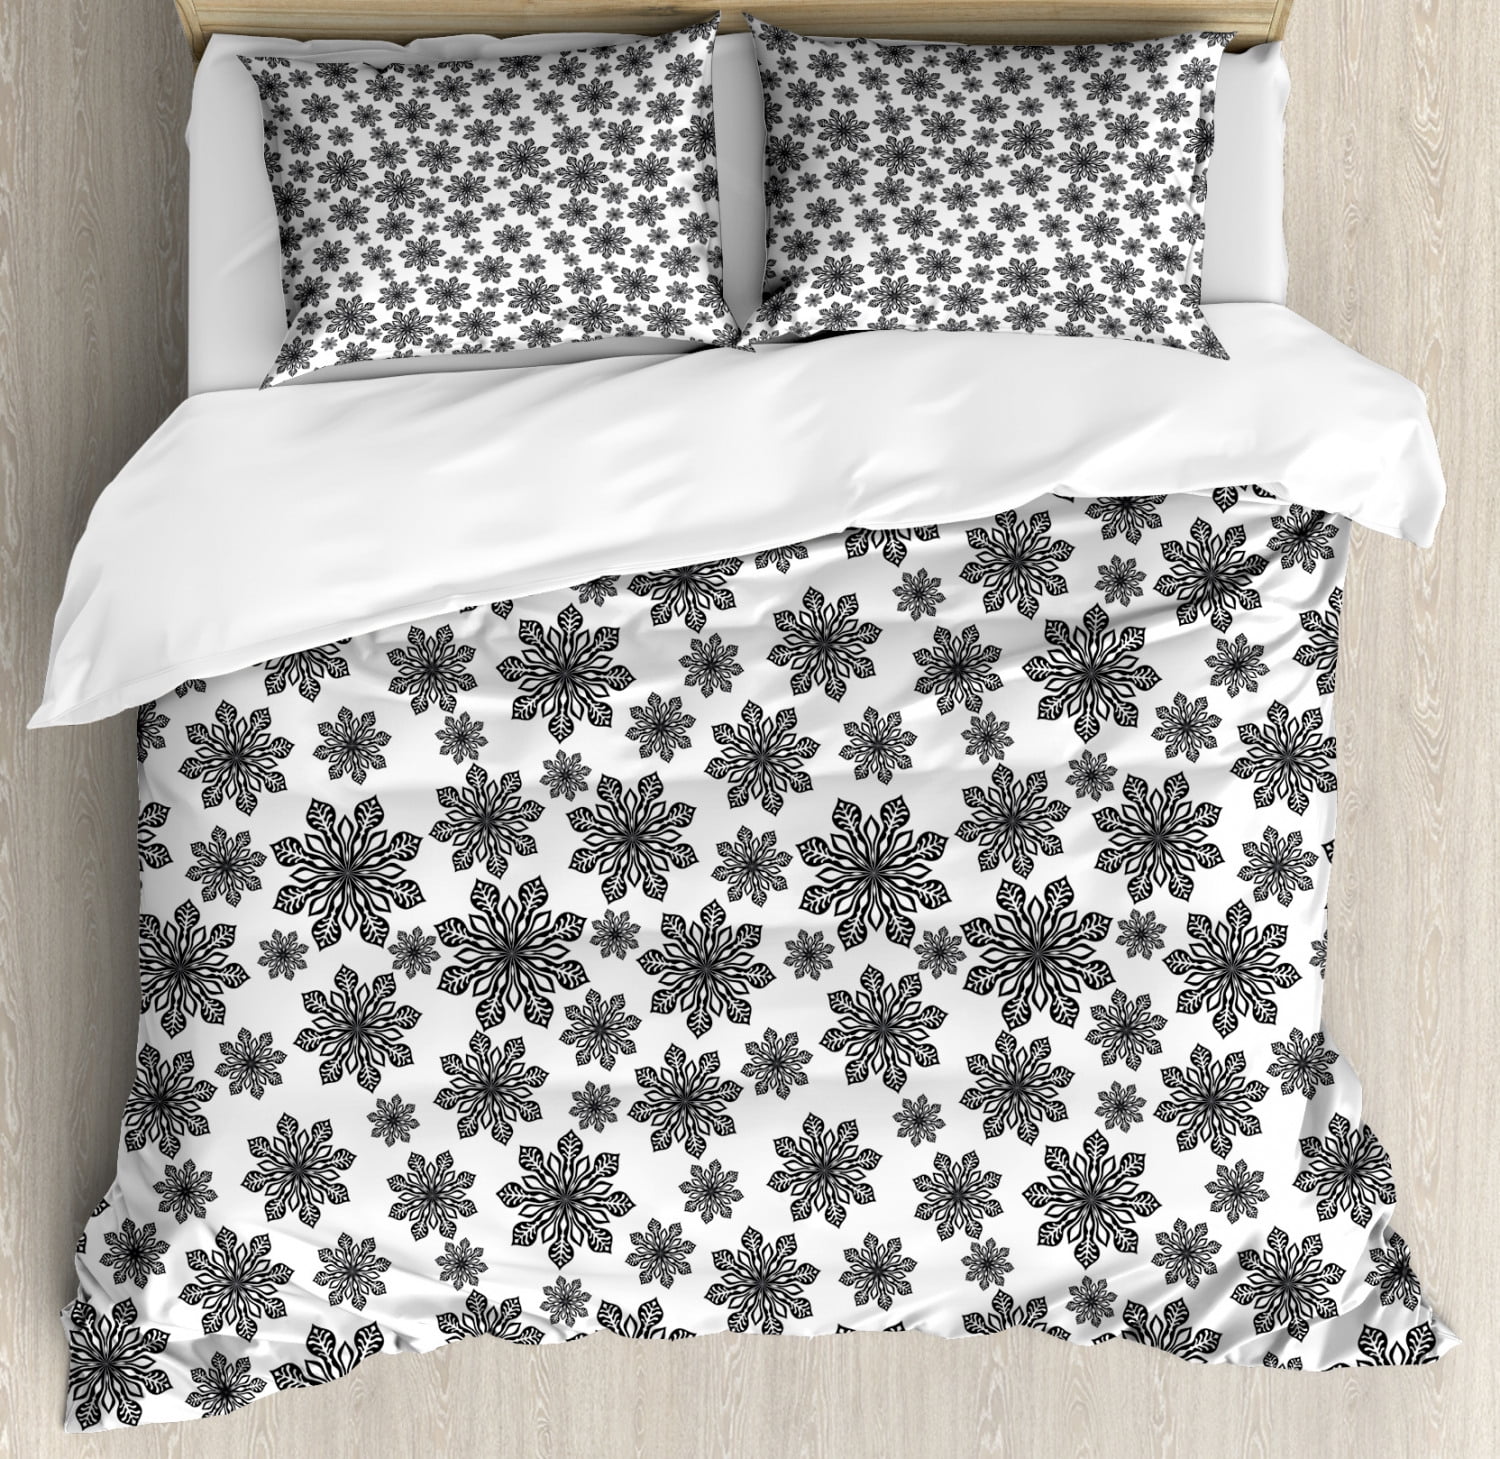 Snowflake King Size Duvet Cover Set Monochrome Snowflakes